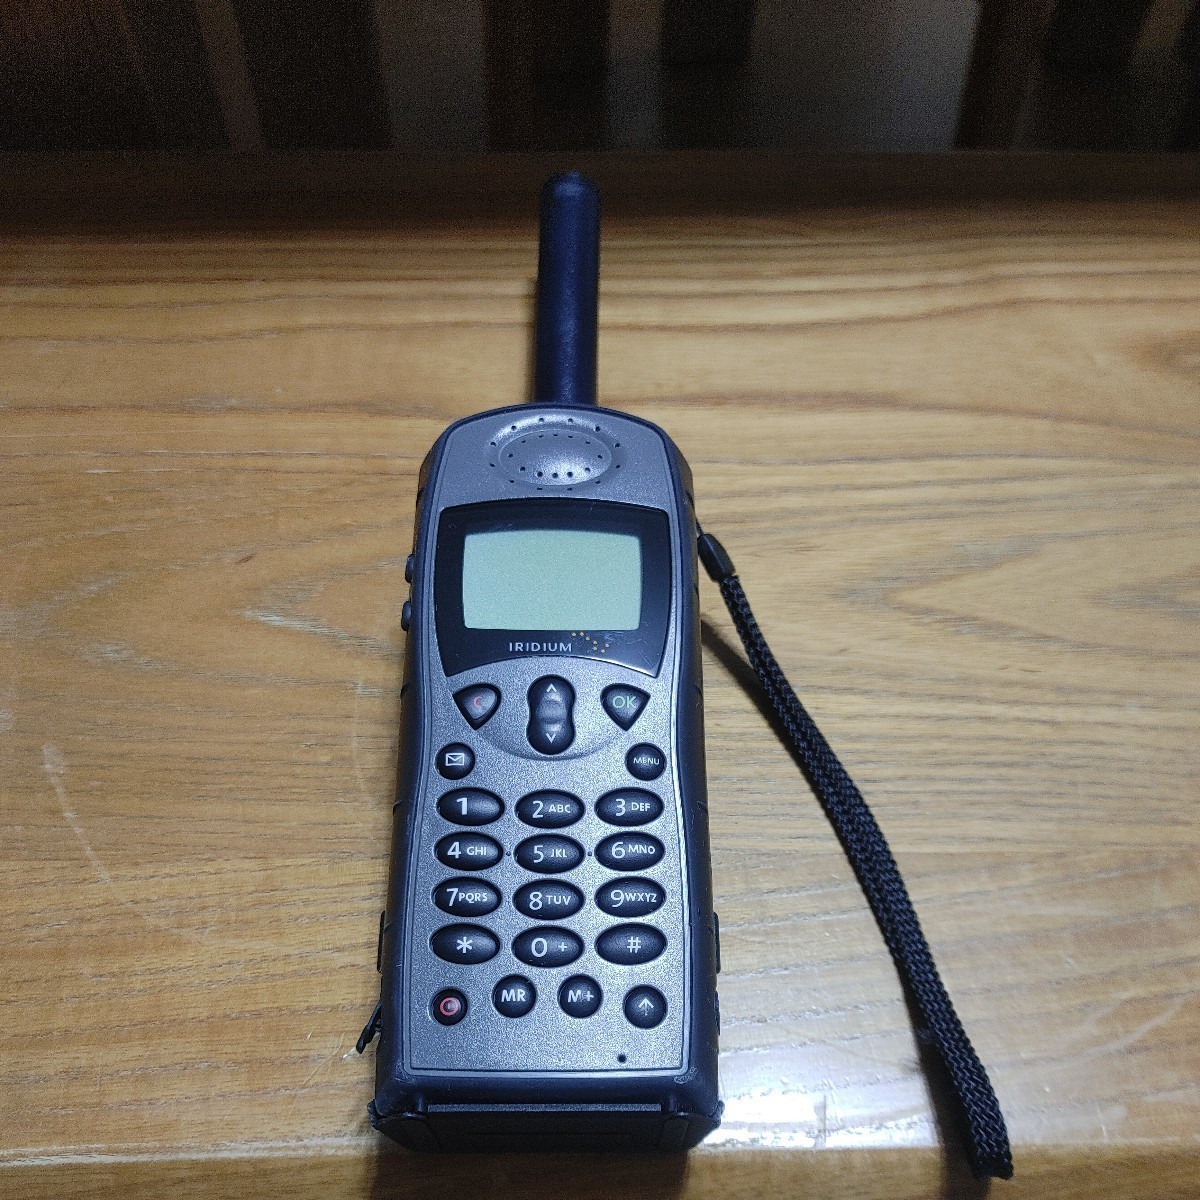 Iridium 9505A мир среди использование возможен только. спутниковый мобильный телефон 